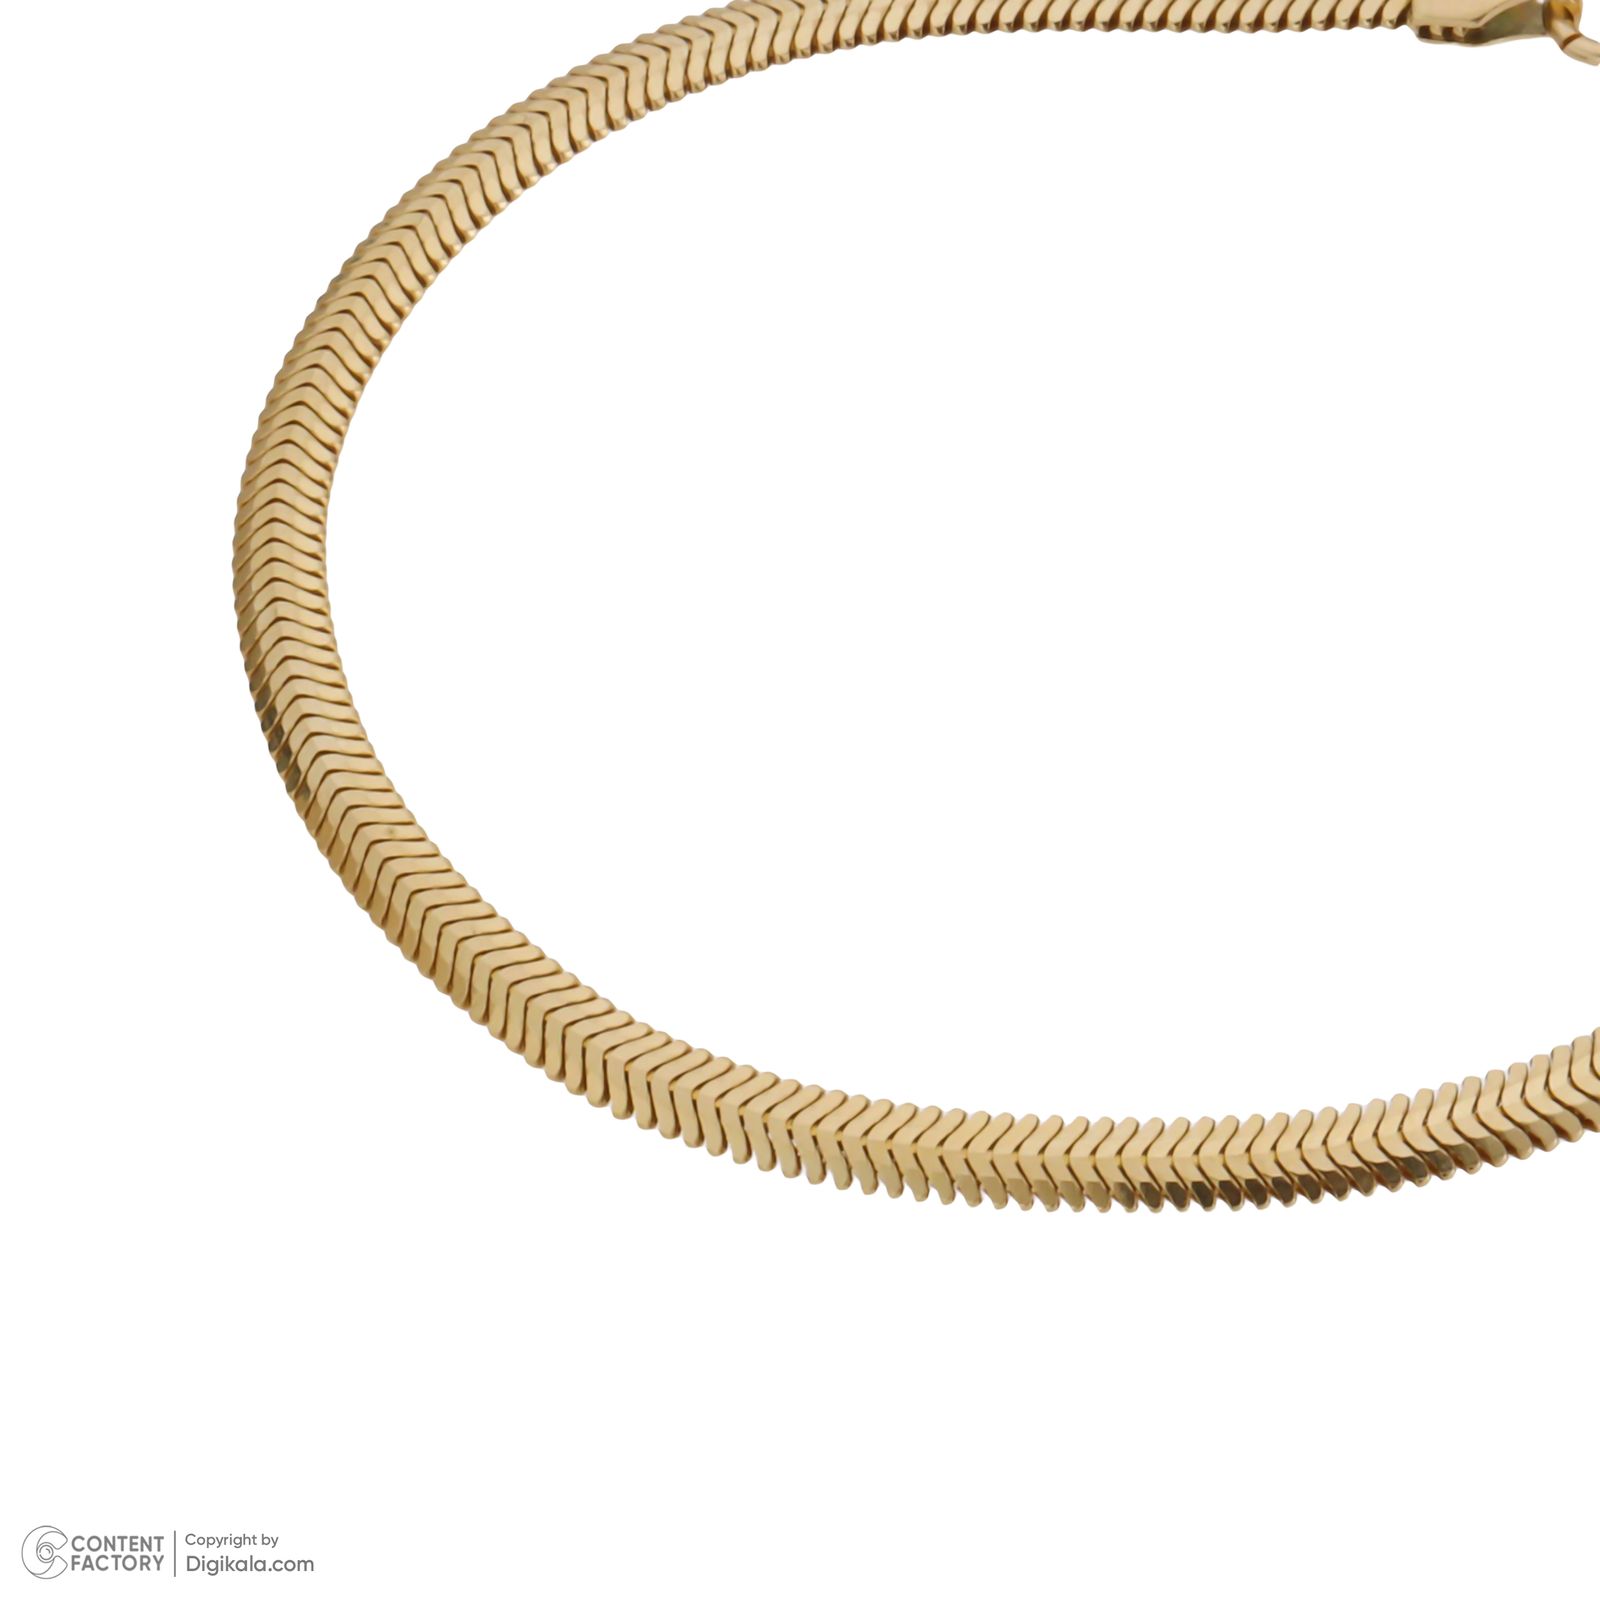 دستبند طلا 18 عیار زنانه مایا ماهک مدل MB1698 طرح تیغ ماهی -  - 3